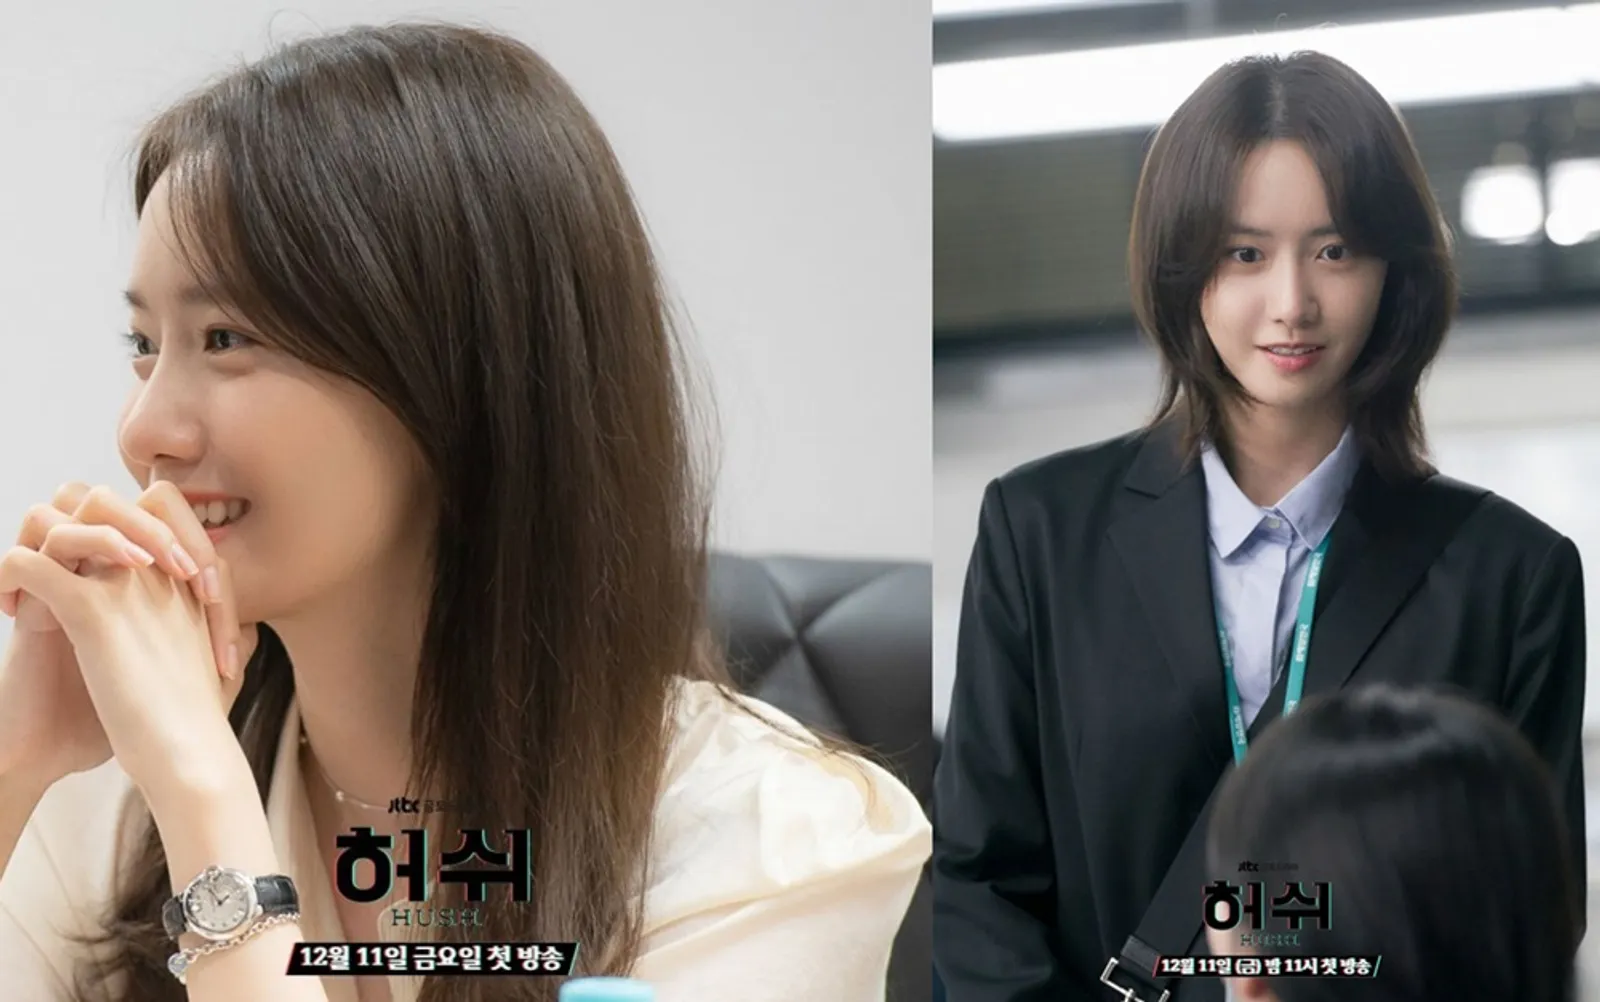 Rela Ubah Penampilan, 8 Fakta Drama 'Hush' dari Yoona SNSD